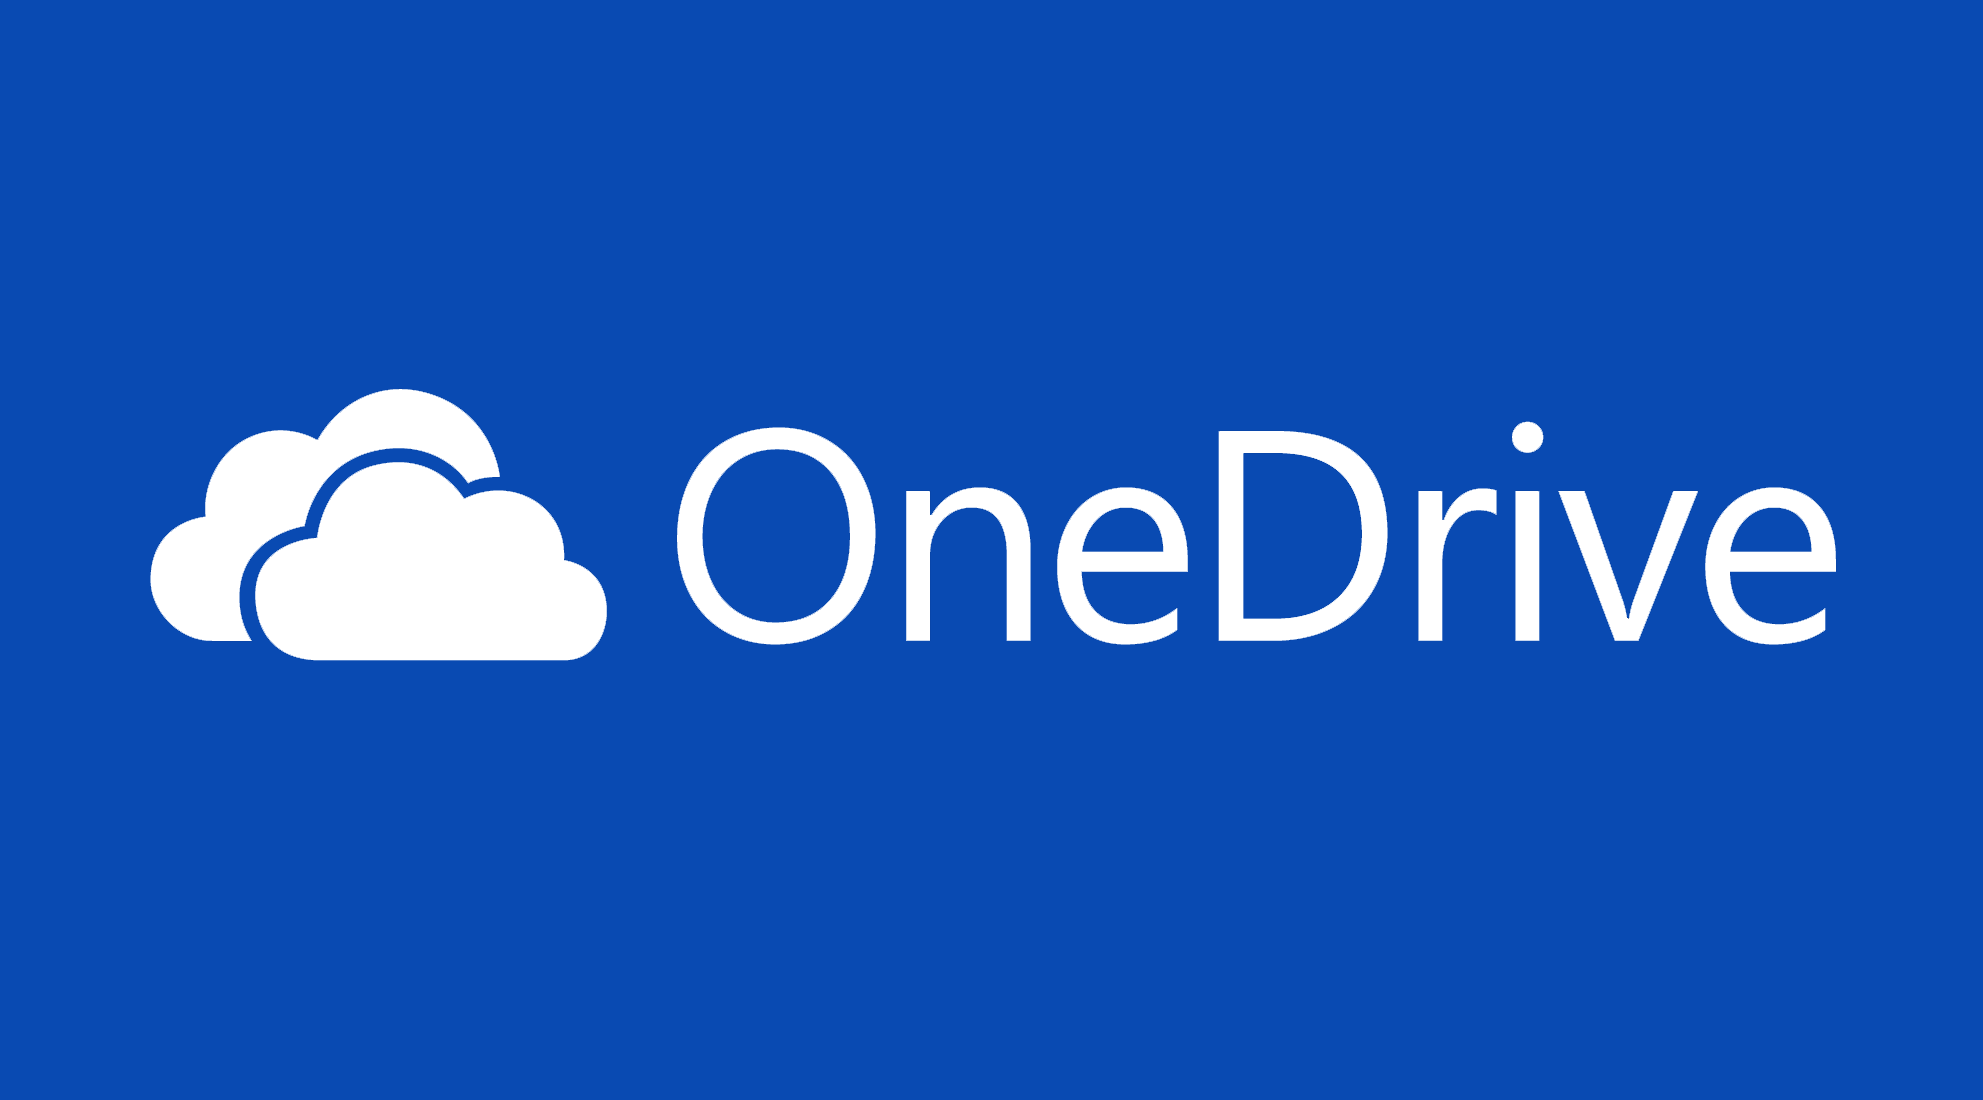 OneDrive adoptará la estrategia de Dropbox con ofertas para ganar espacio